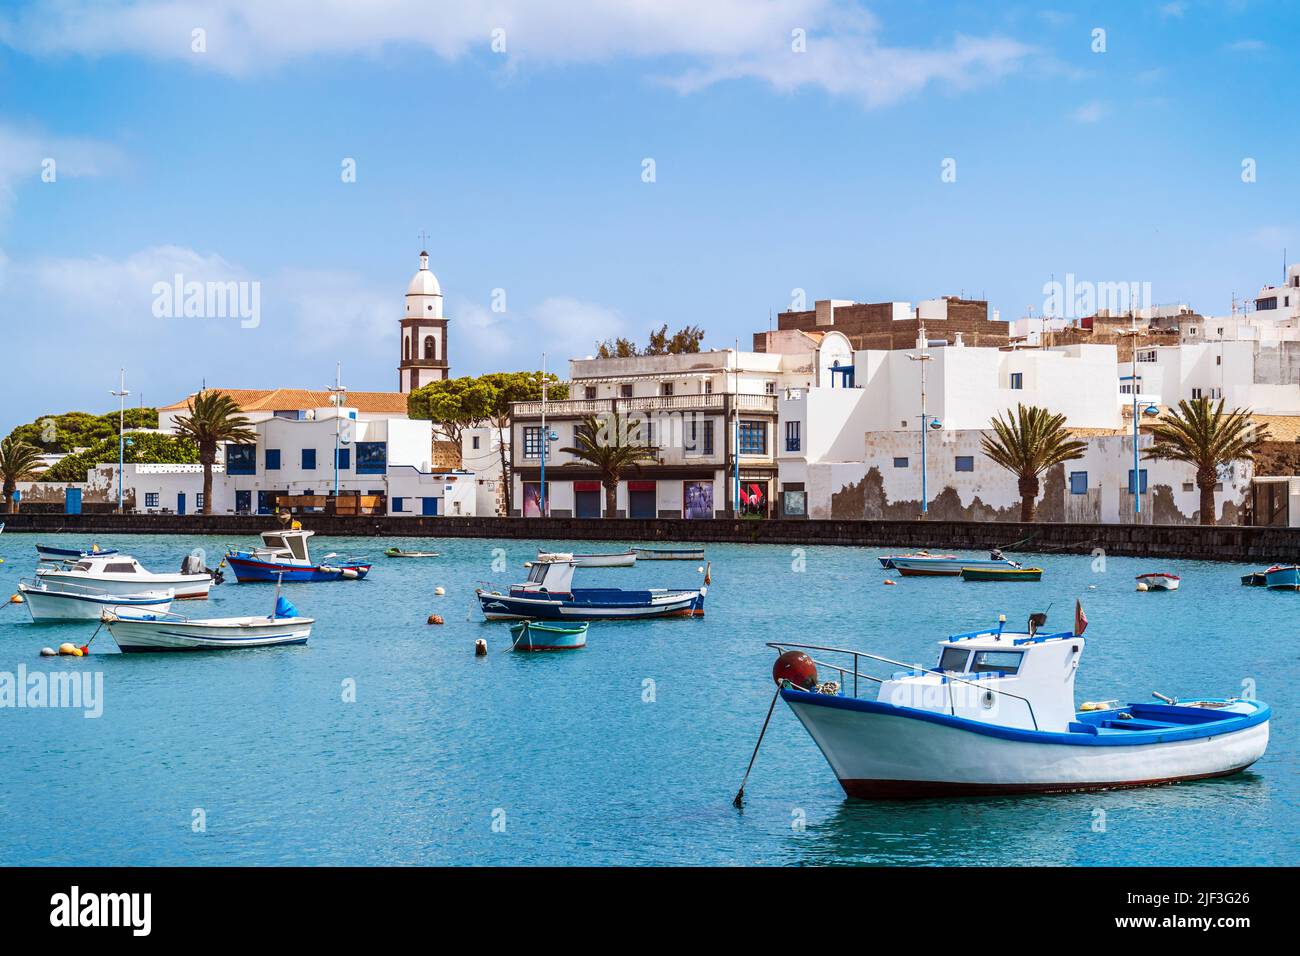 Hermoso muelle con arquitectura histórica y barcos en aguas azules en Arrecife, capital de Lanzarote, Islas Canarias, España Foto de stock